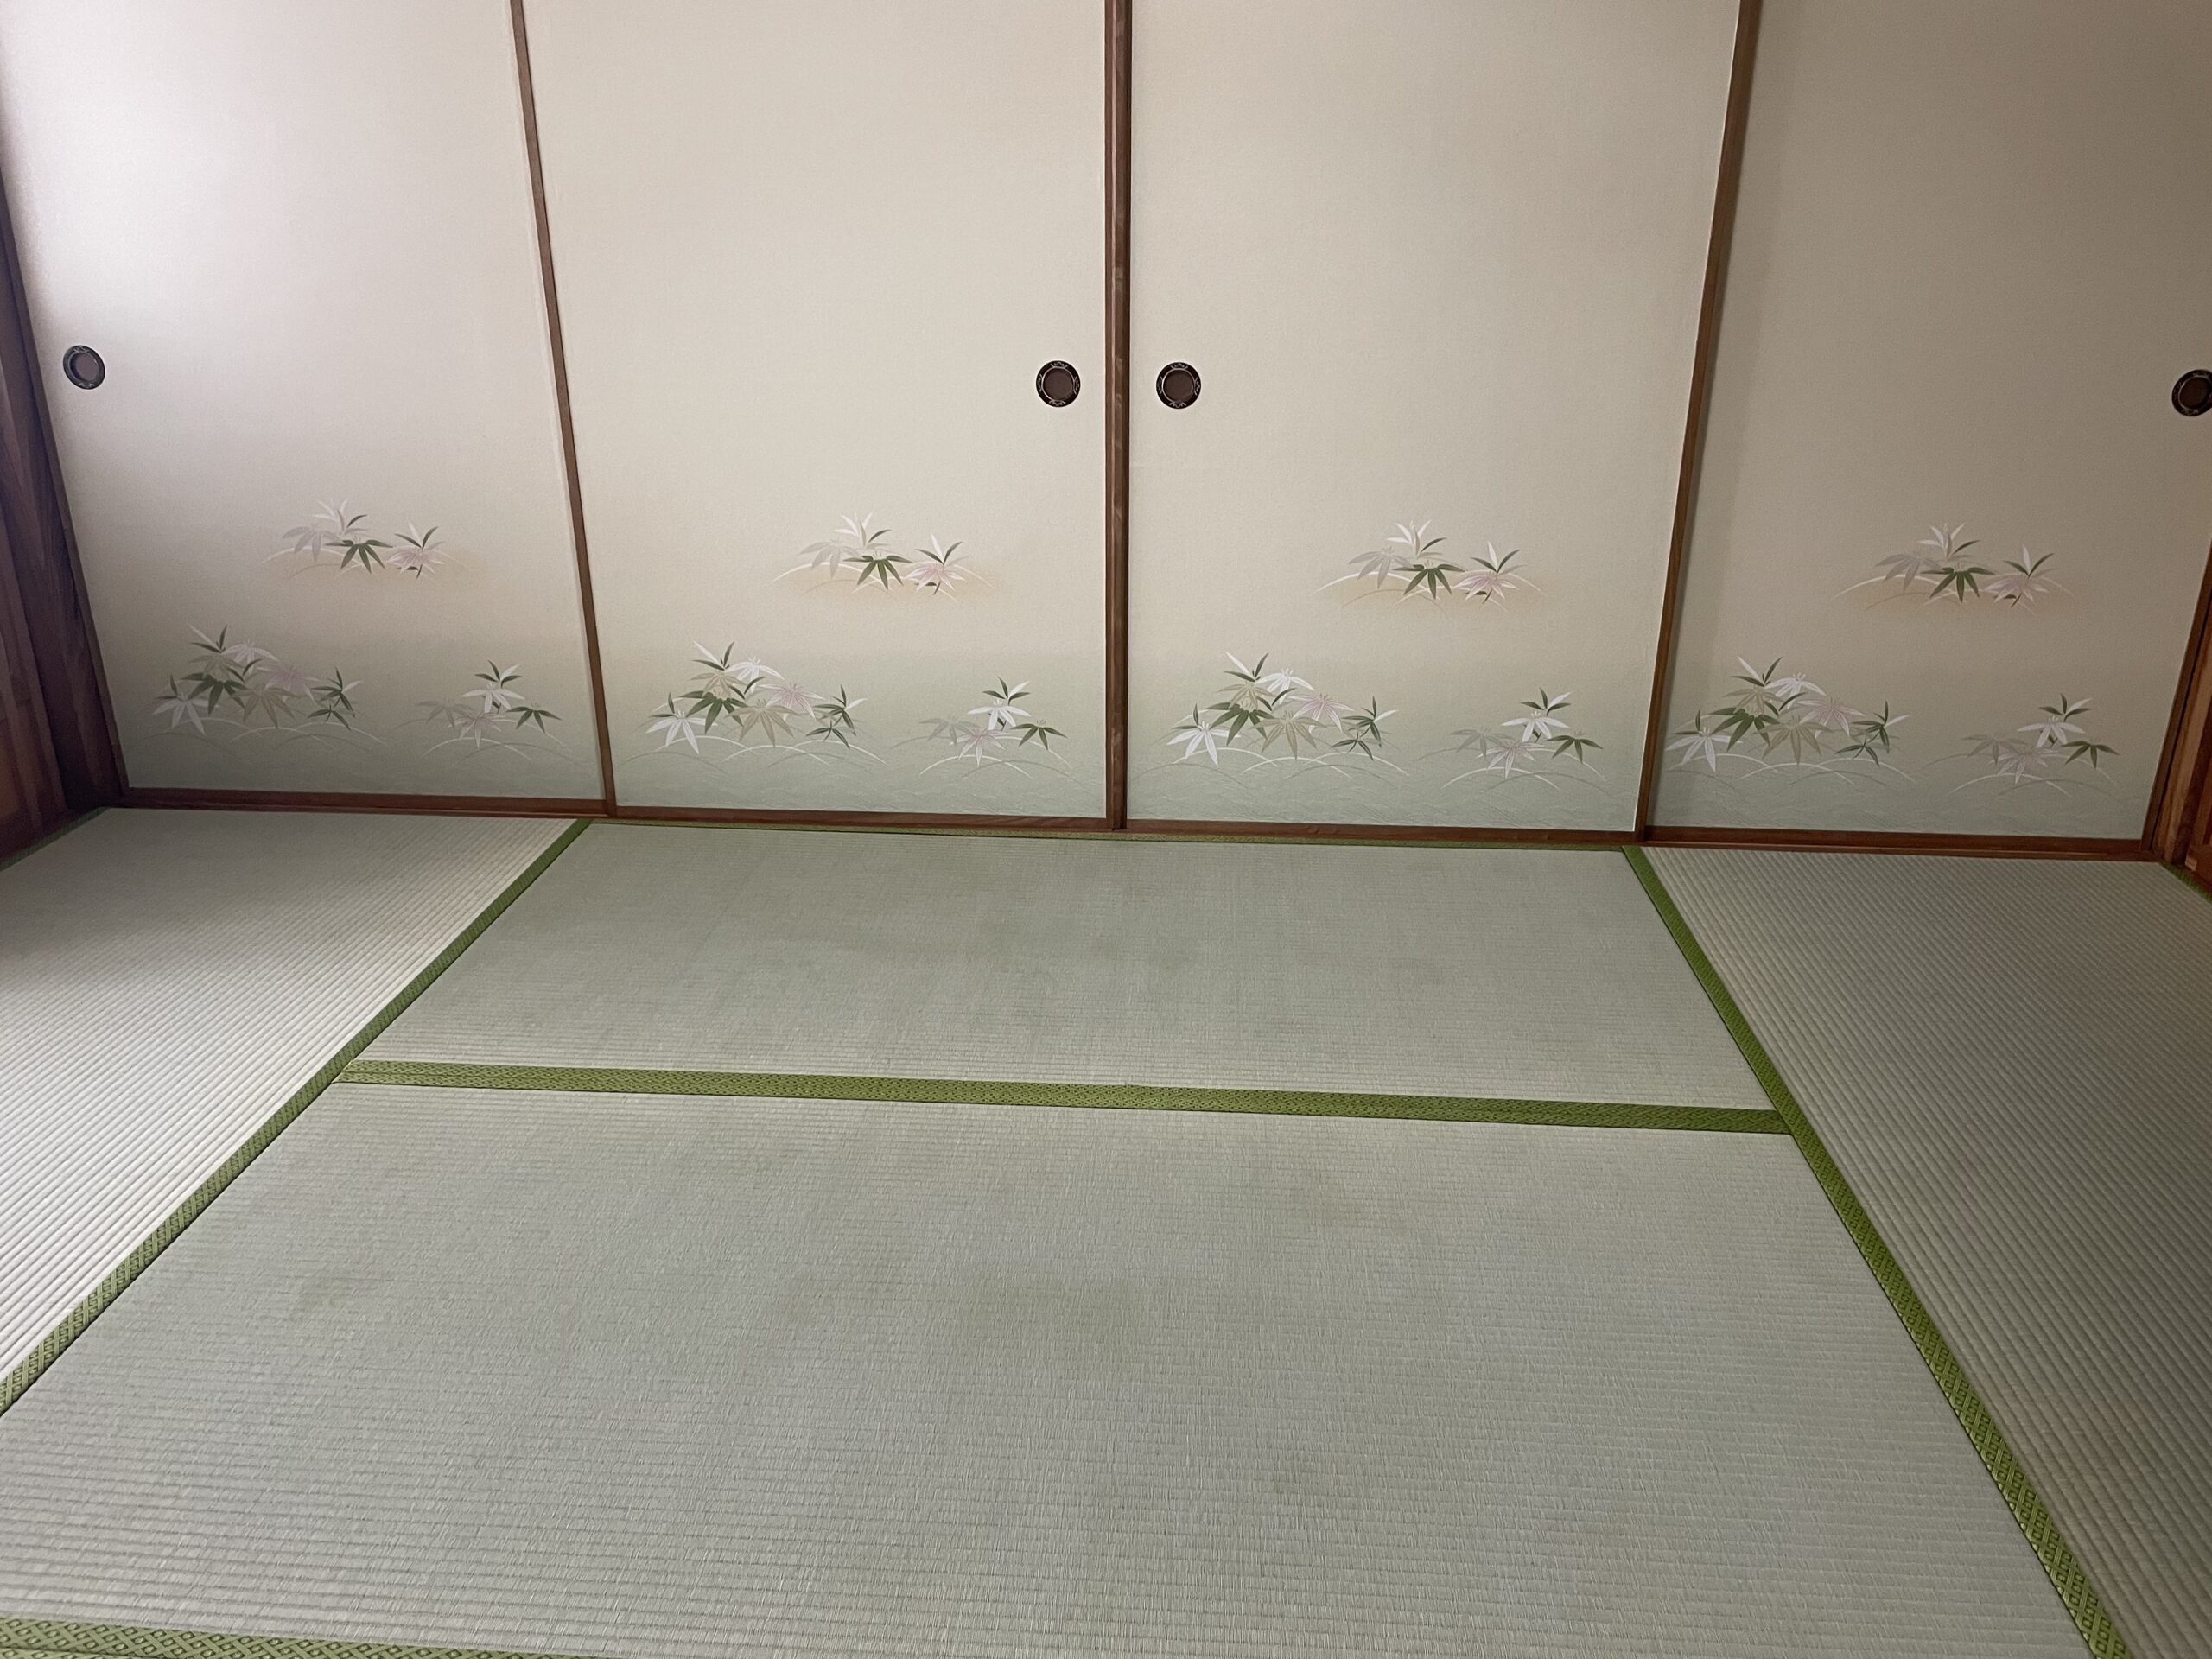 畳表は熊本県産イグサを使用しています。目の詰まった綺麗な表です。